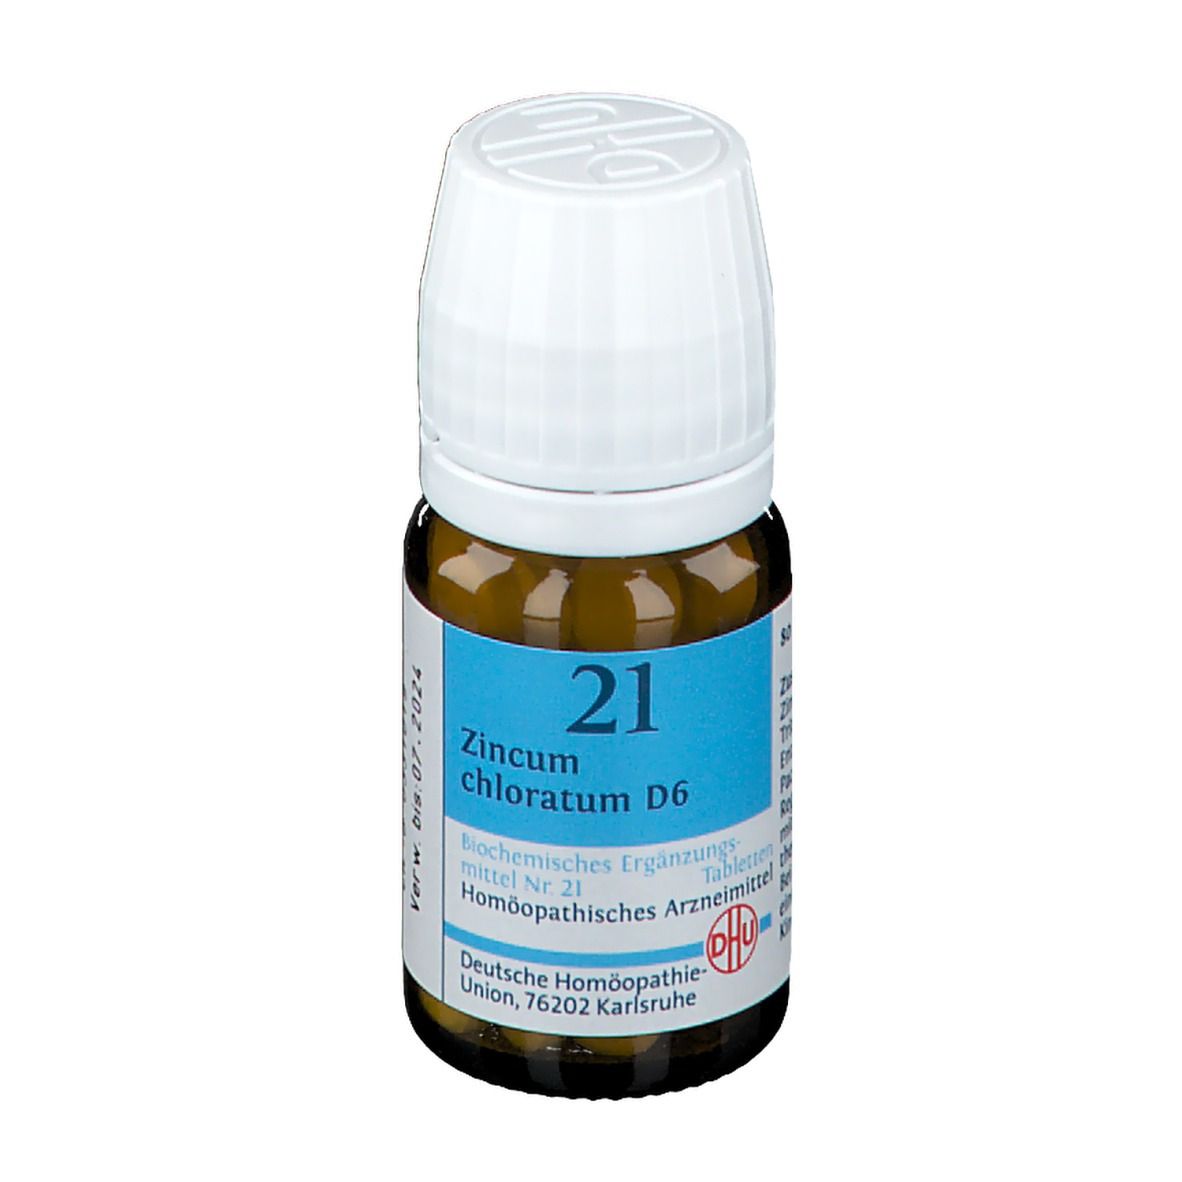 DHU Biochemie 21 Zincum chloratum D6